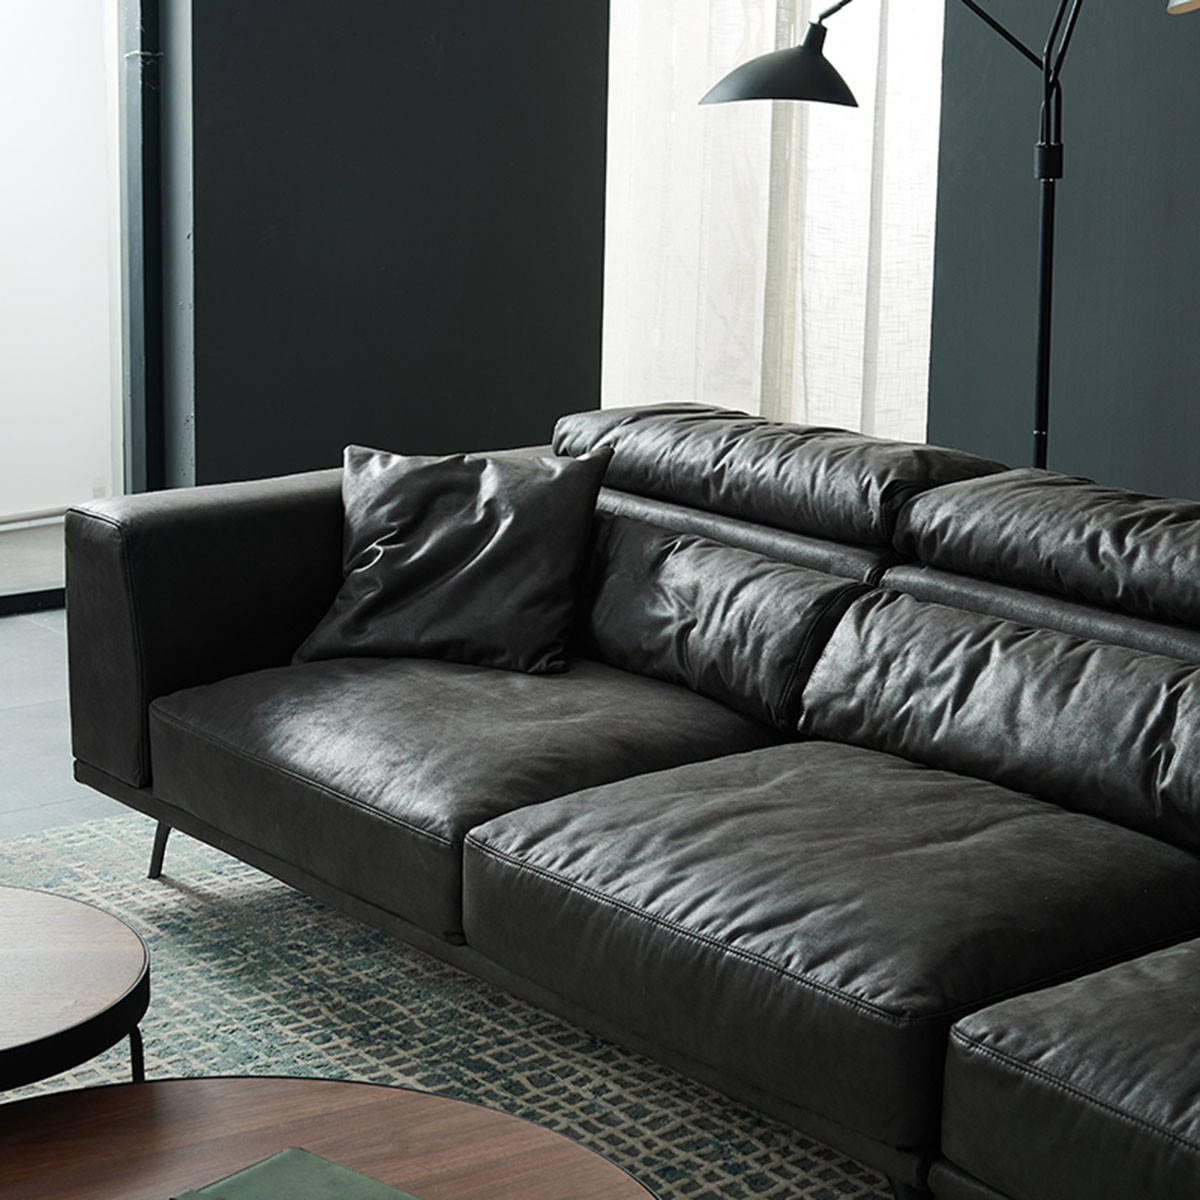 免洗科技布沙发轻奢北欧客厅 现代简约黑色羽绒布艺意式极简沙发